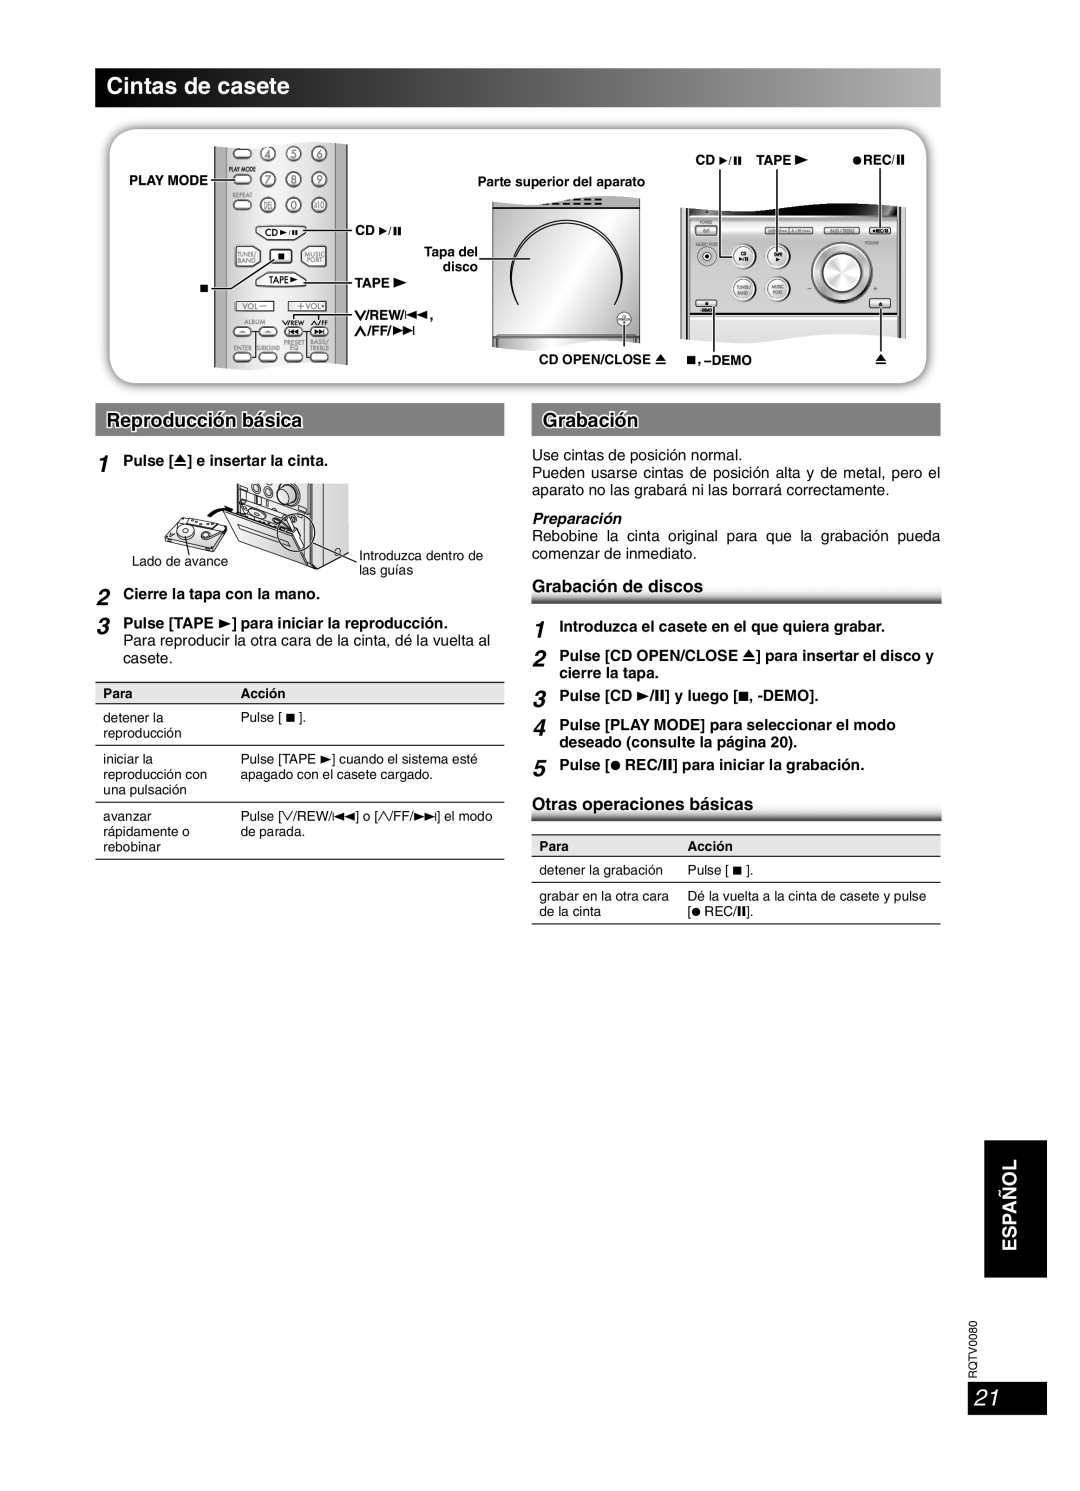 Panasonic RQTV0080-1P, SC-PM23 Cintas de casete, Grabación de discos, Otras operaciones básicas, Preparación, Español 